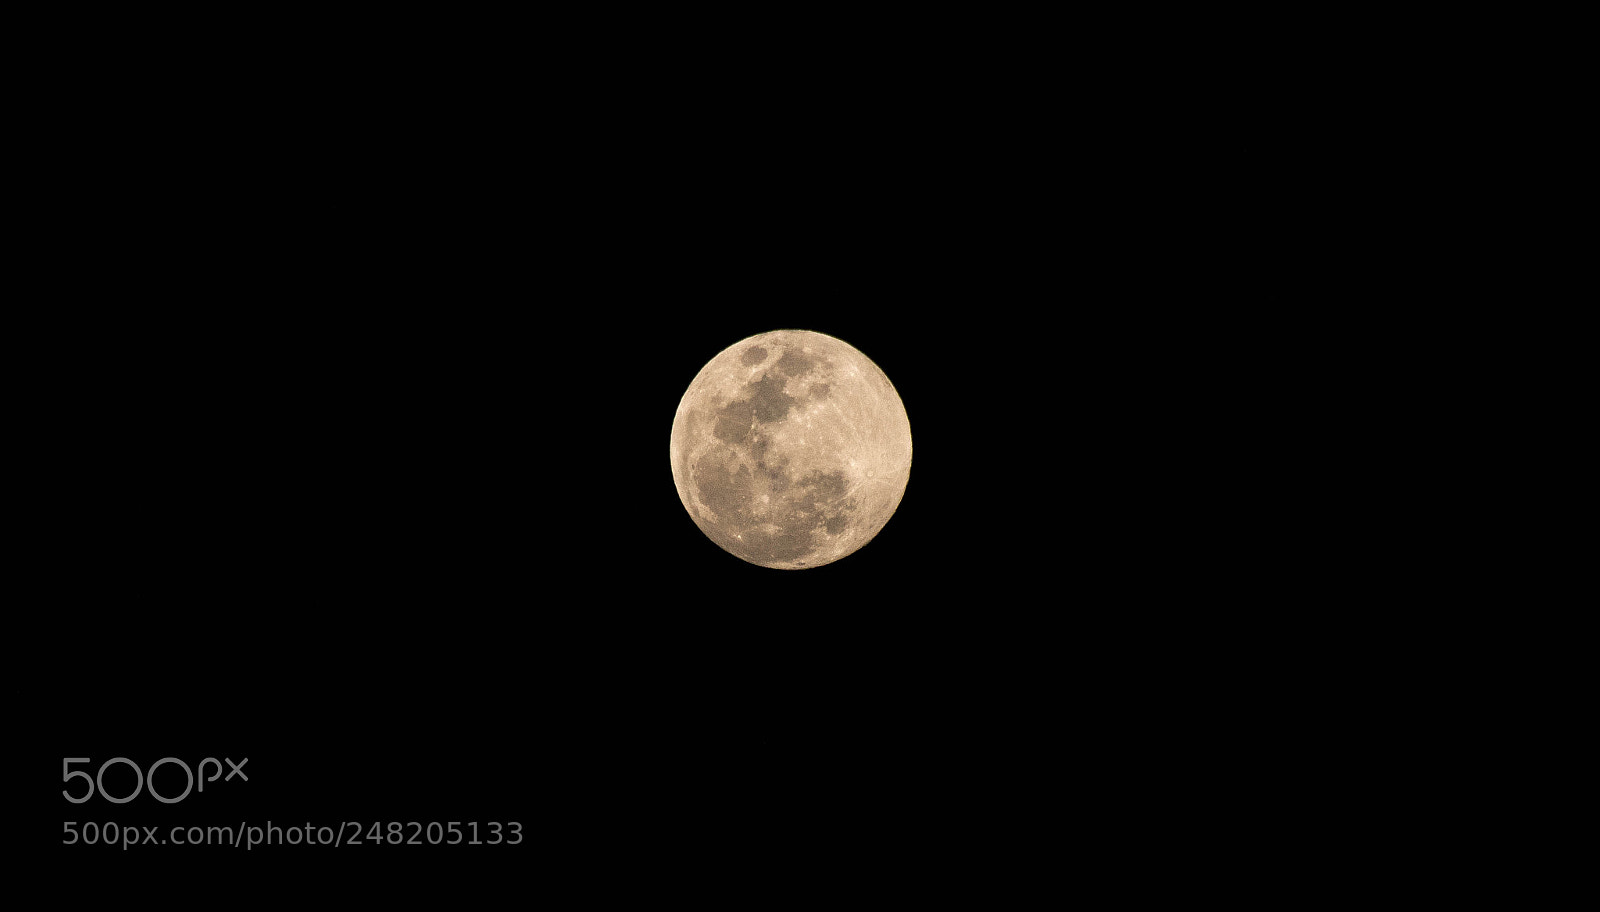 Canon EOS 77D (EOS 9000D / EOS 770D) sample photo. The moon photography